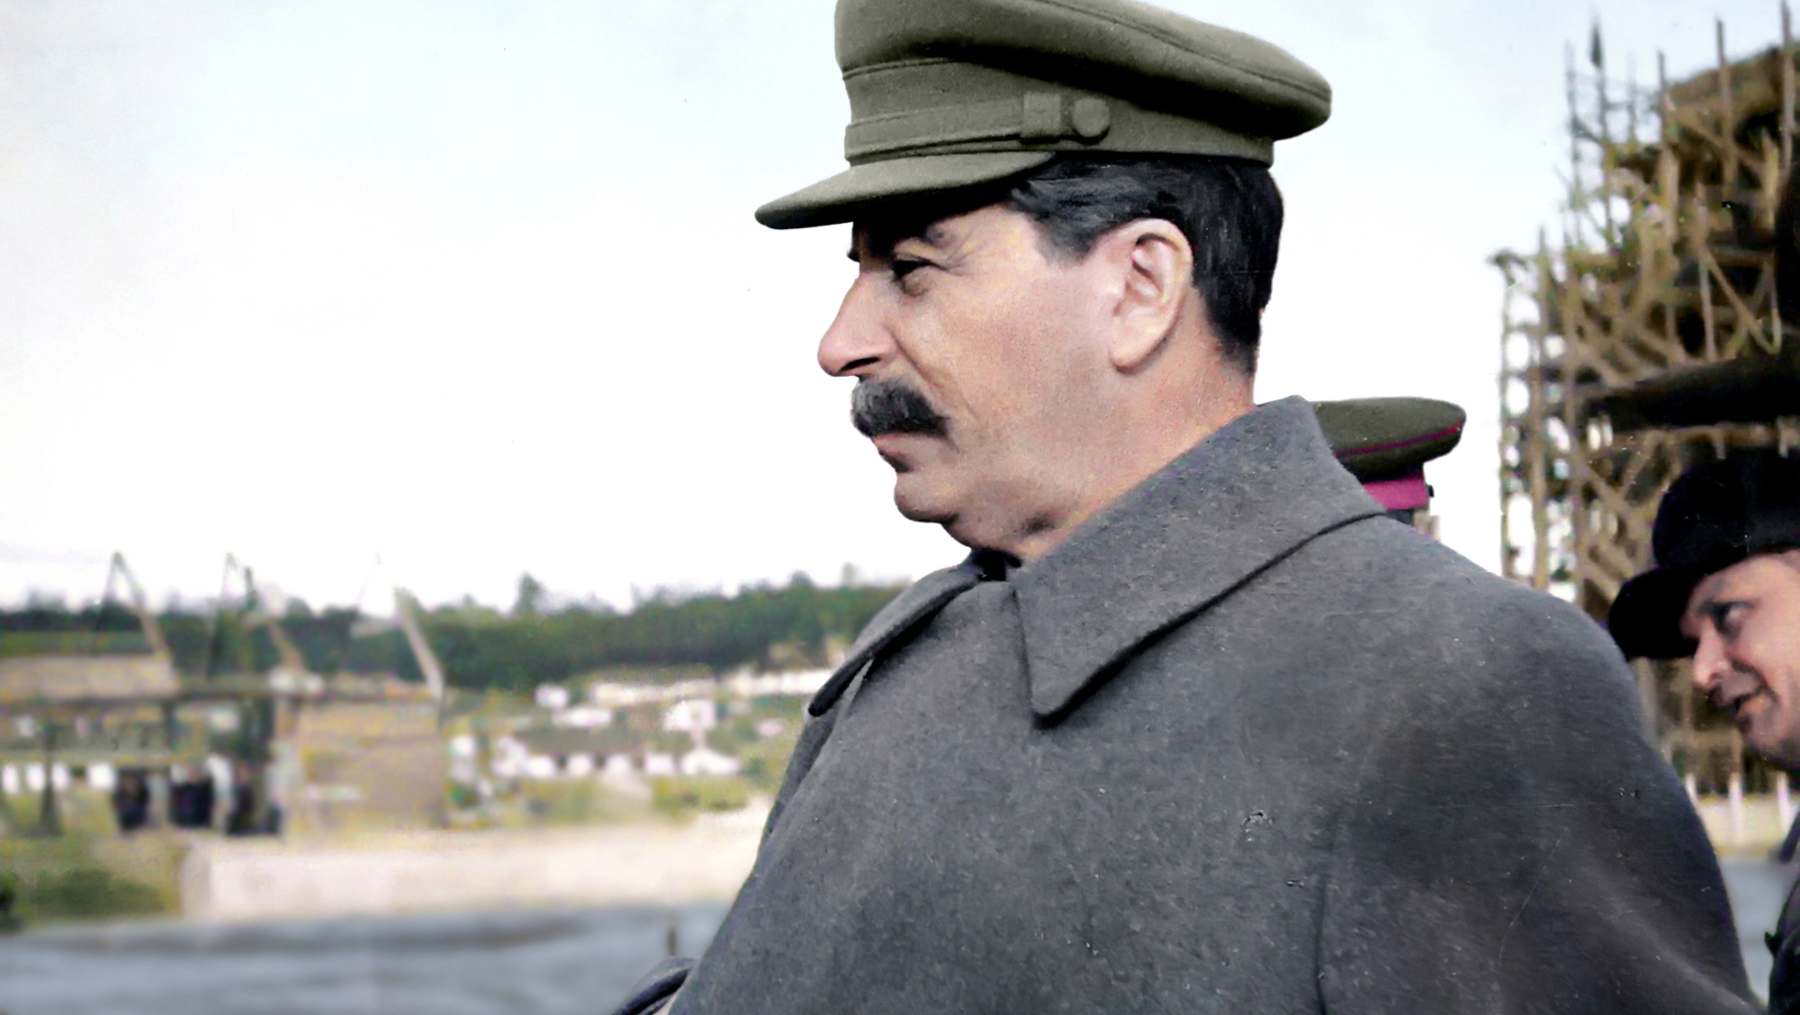 ¿Cómo murió Stalin?